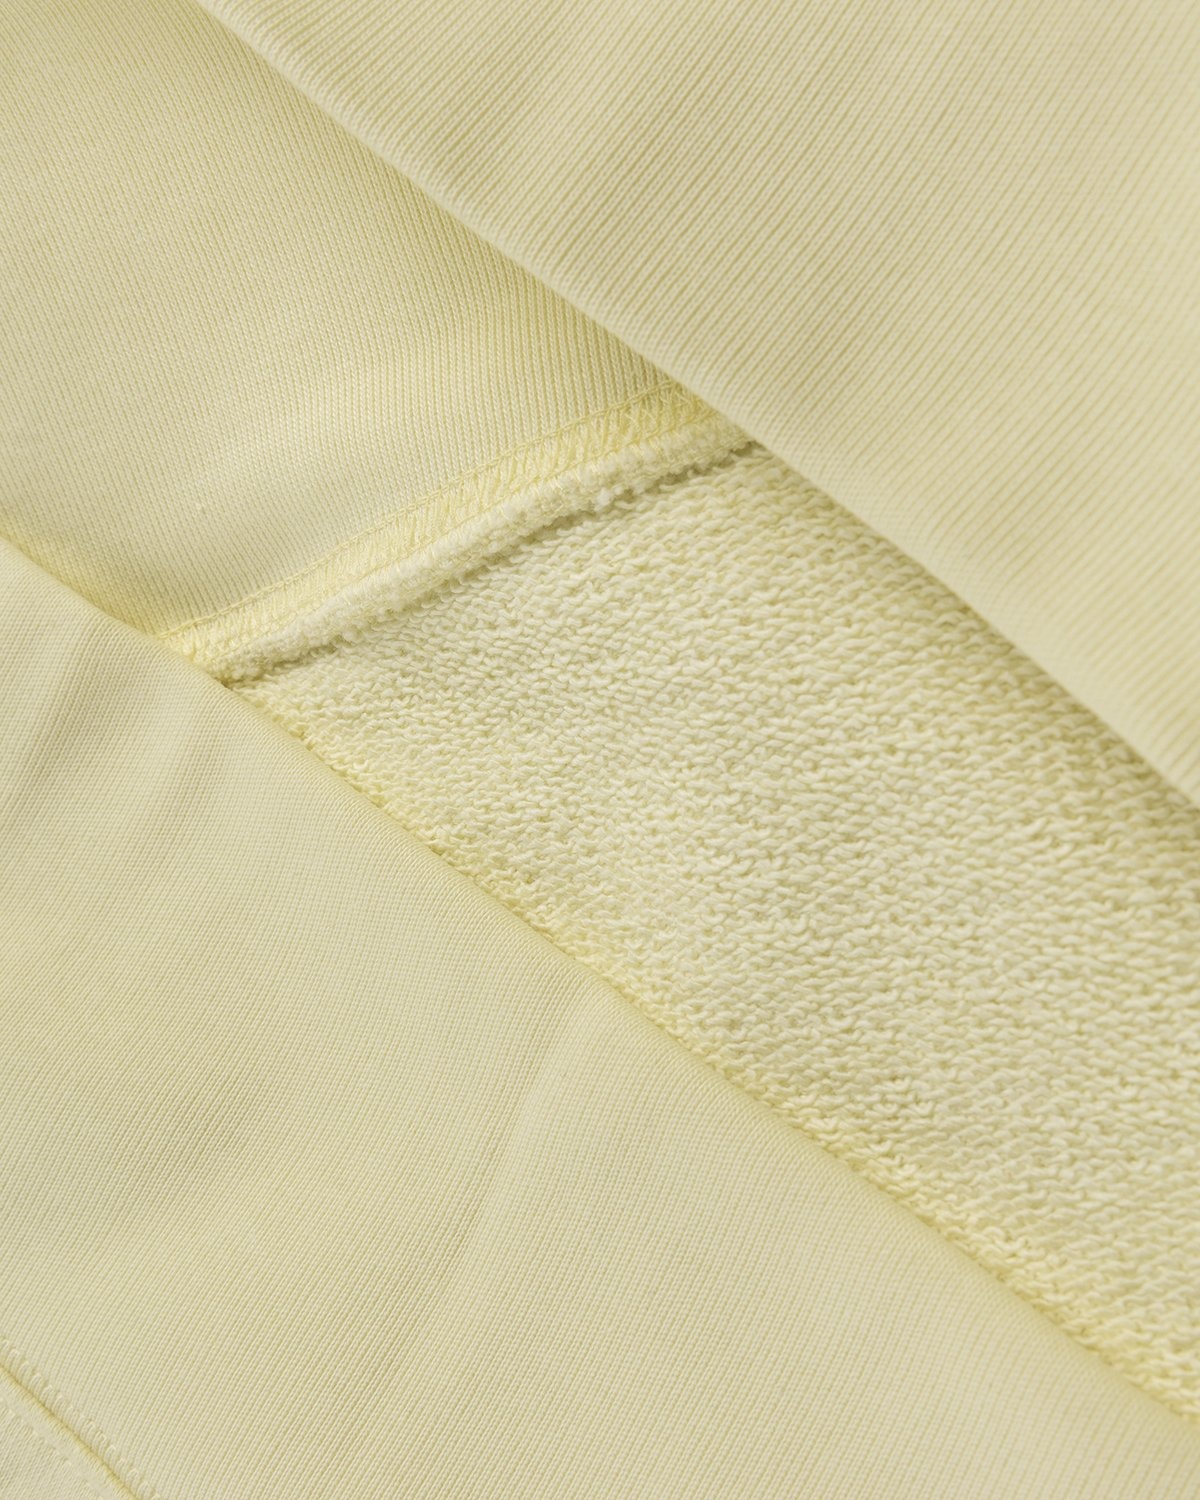 Acne Studios – Organic Cotton Hooded Sweatshirt Vanilla Yellow - Sweats - Yellow - Image 3